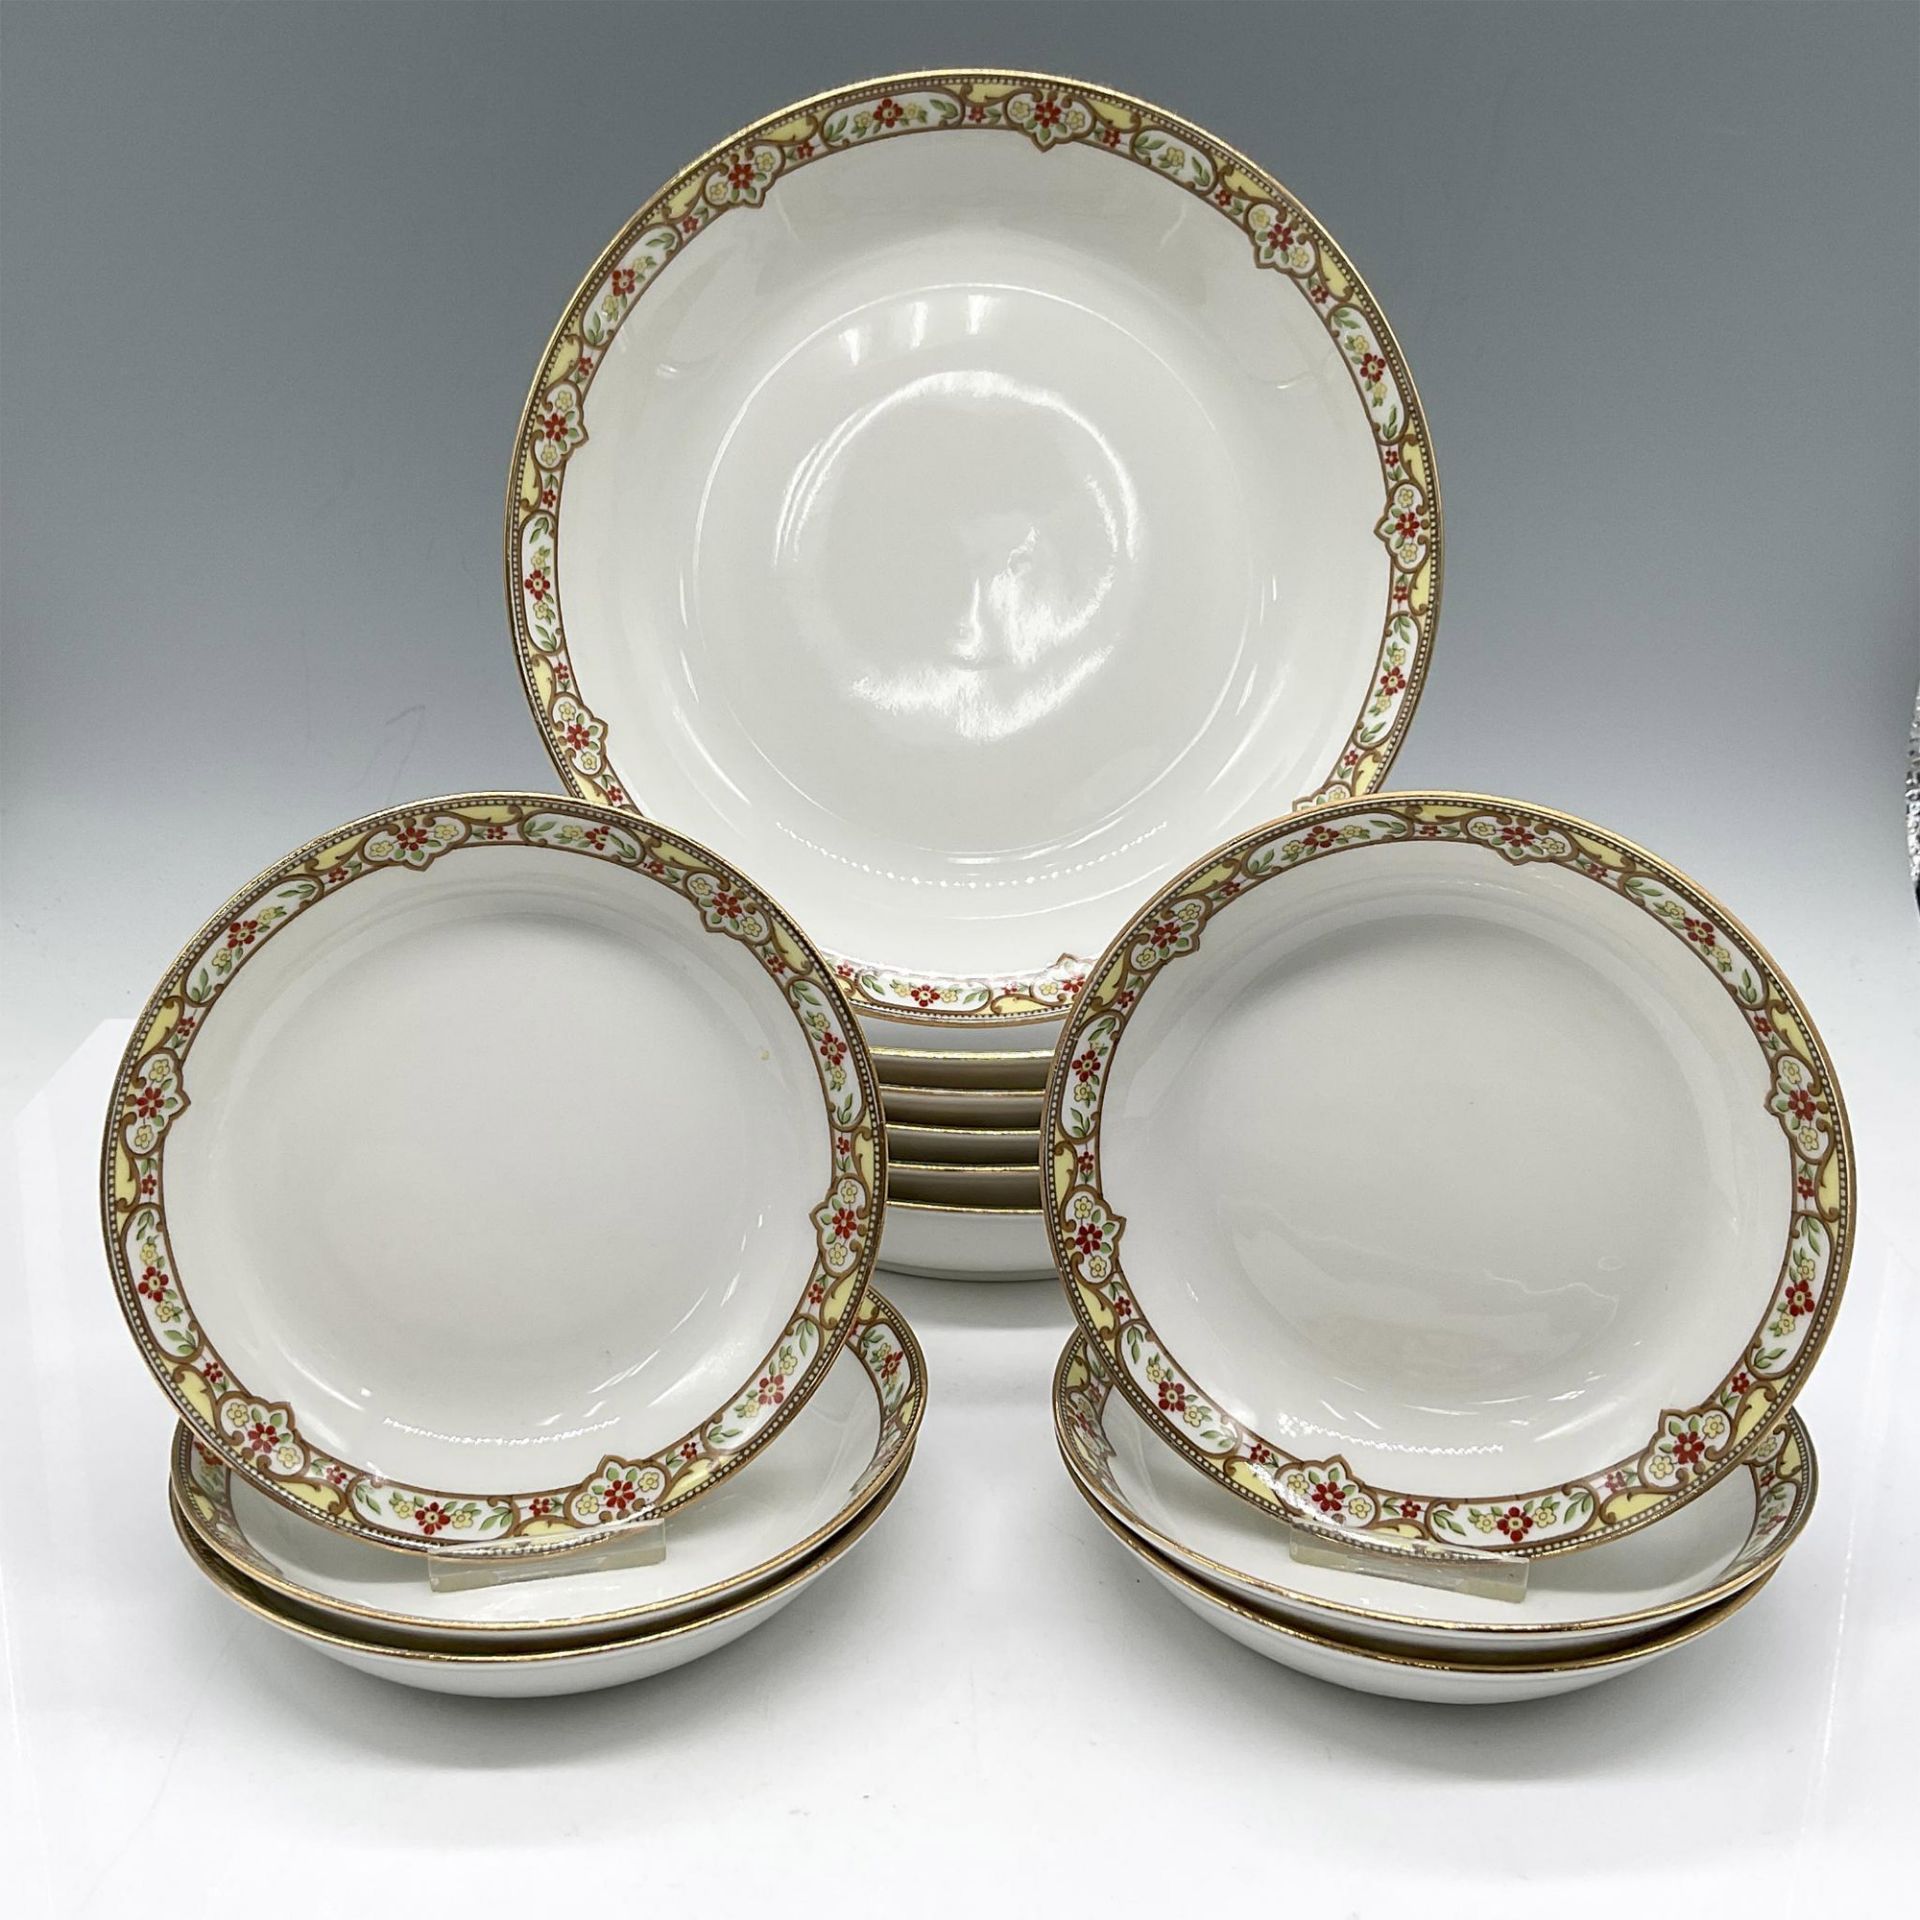 12pc Limoges Vignaud Porcelain Serveware, Bowls